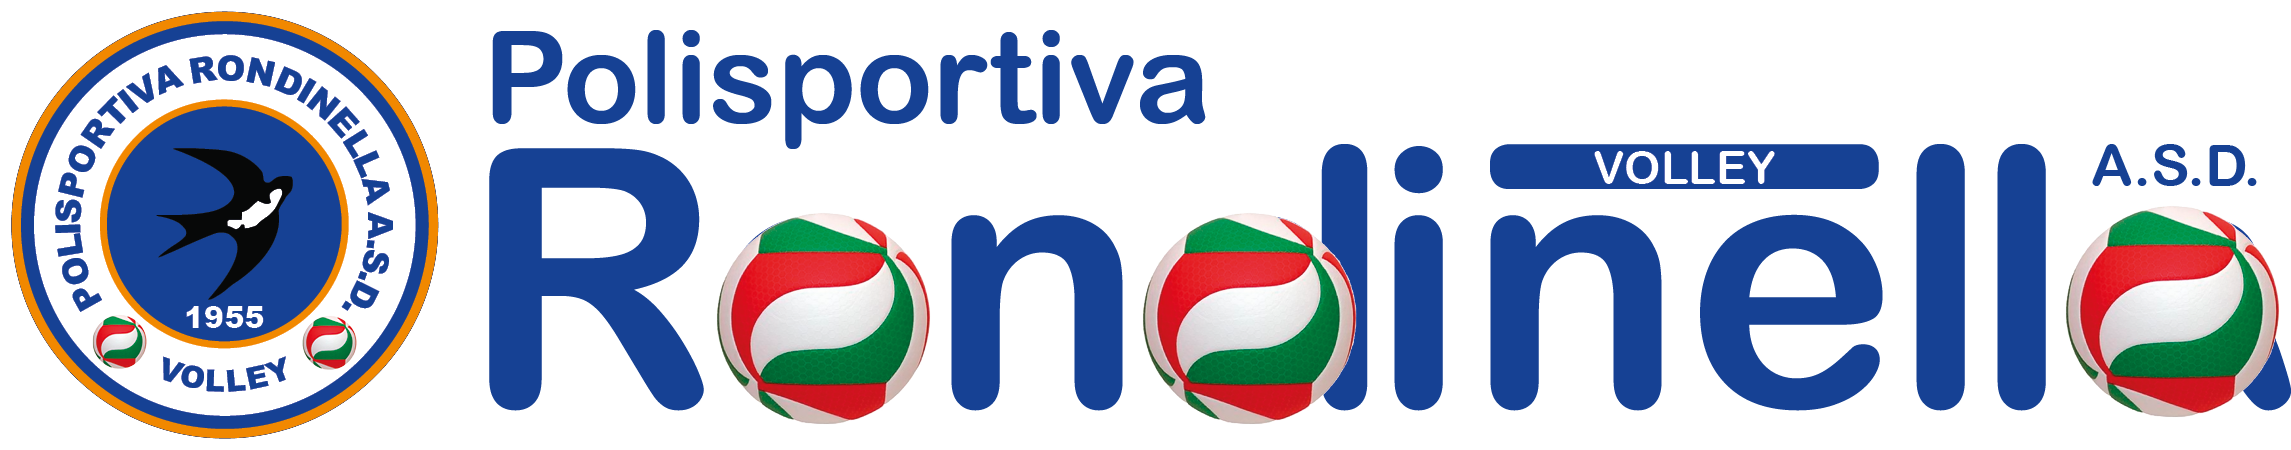 Polisportiva Rondinella A.S.D. 1955 - Sezione Volley